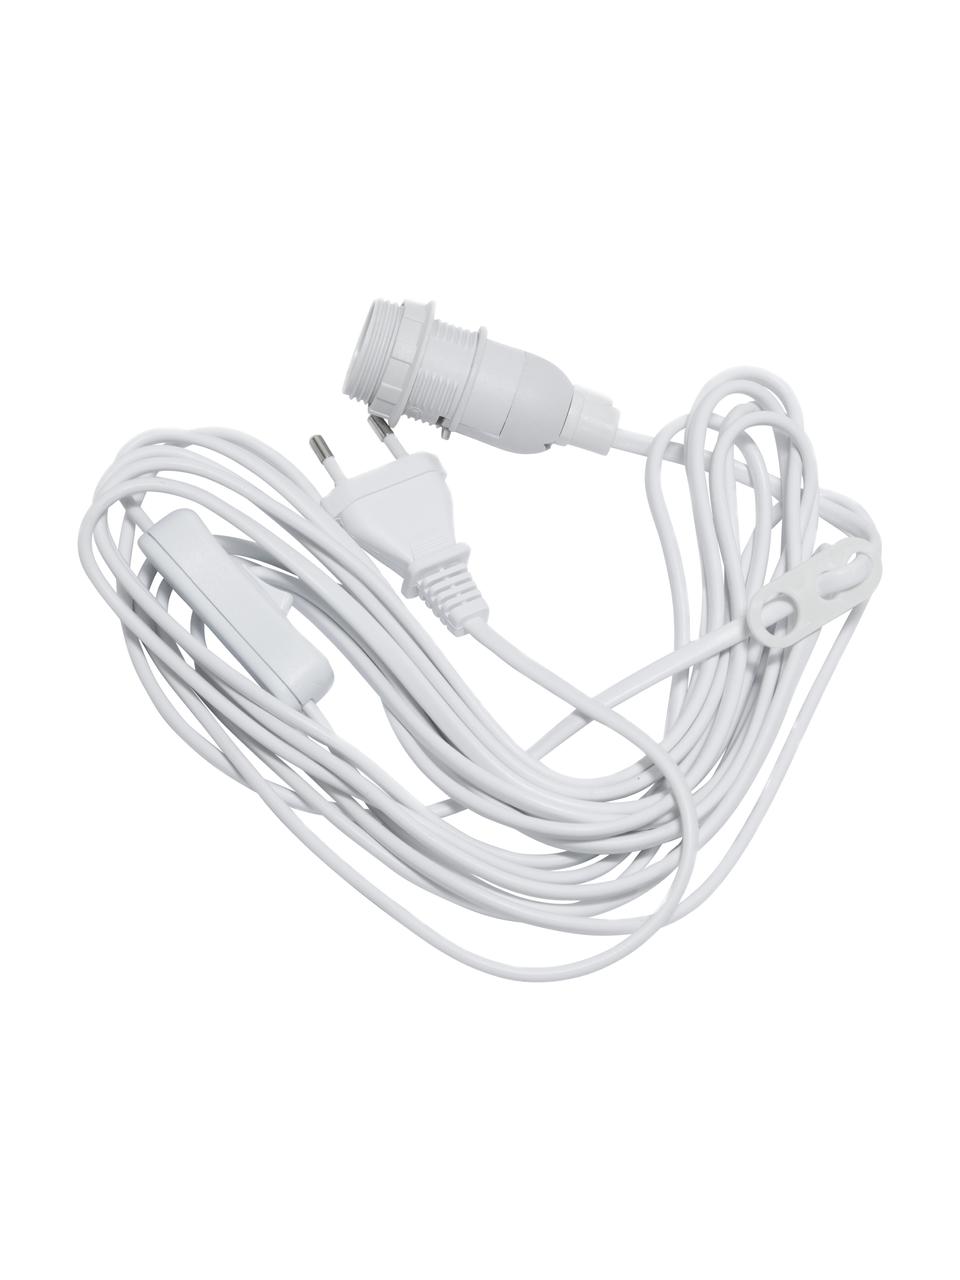 Cable de alimentación con interruptor Bluum, 500 cm, Plástico, Blanco, L 500 cm